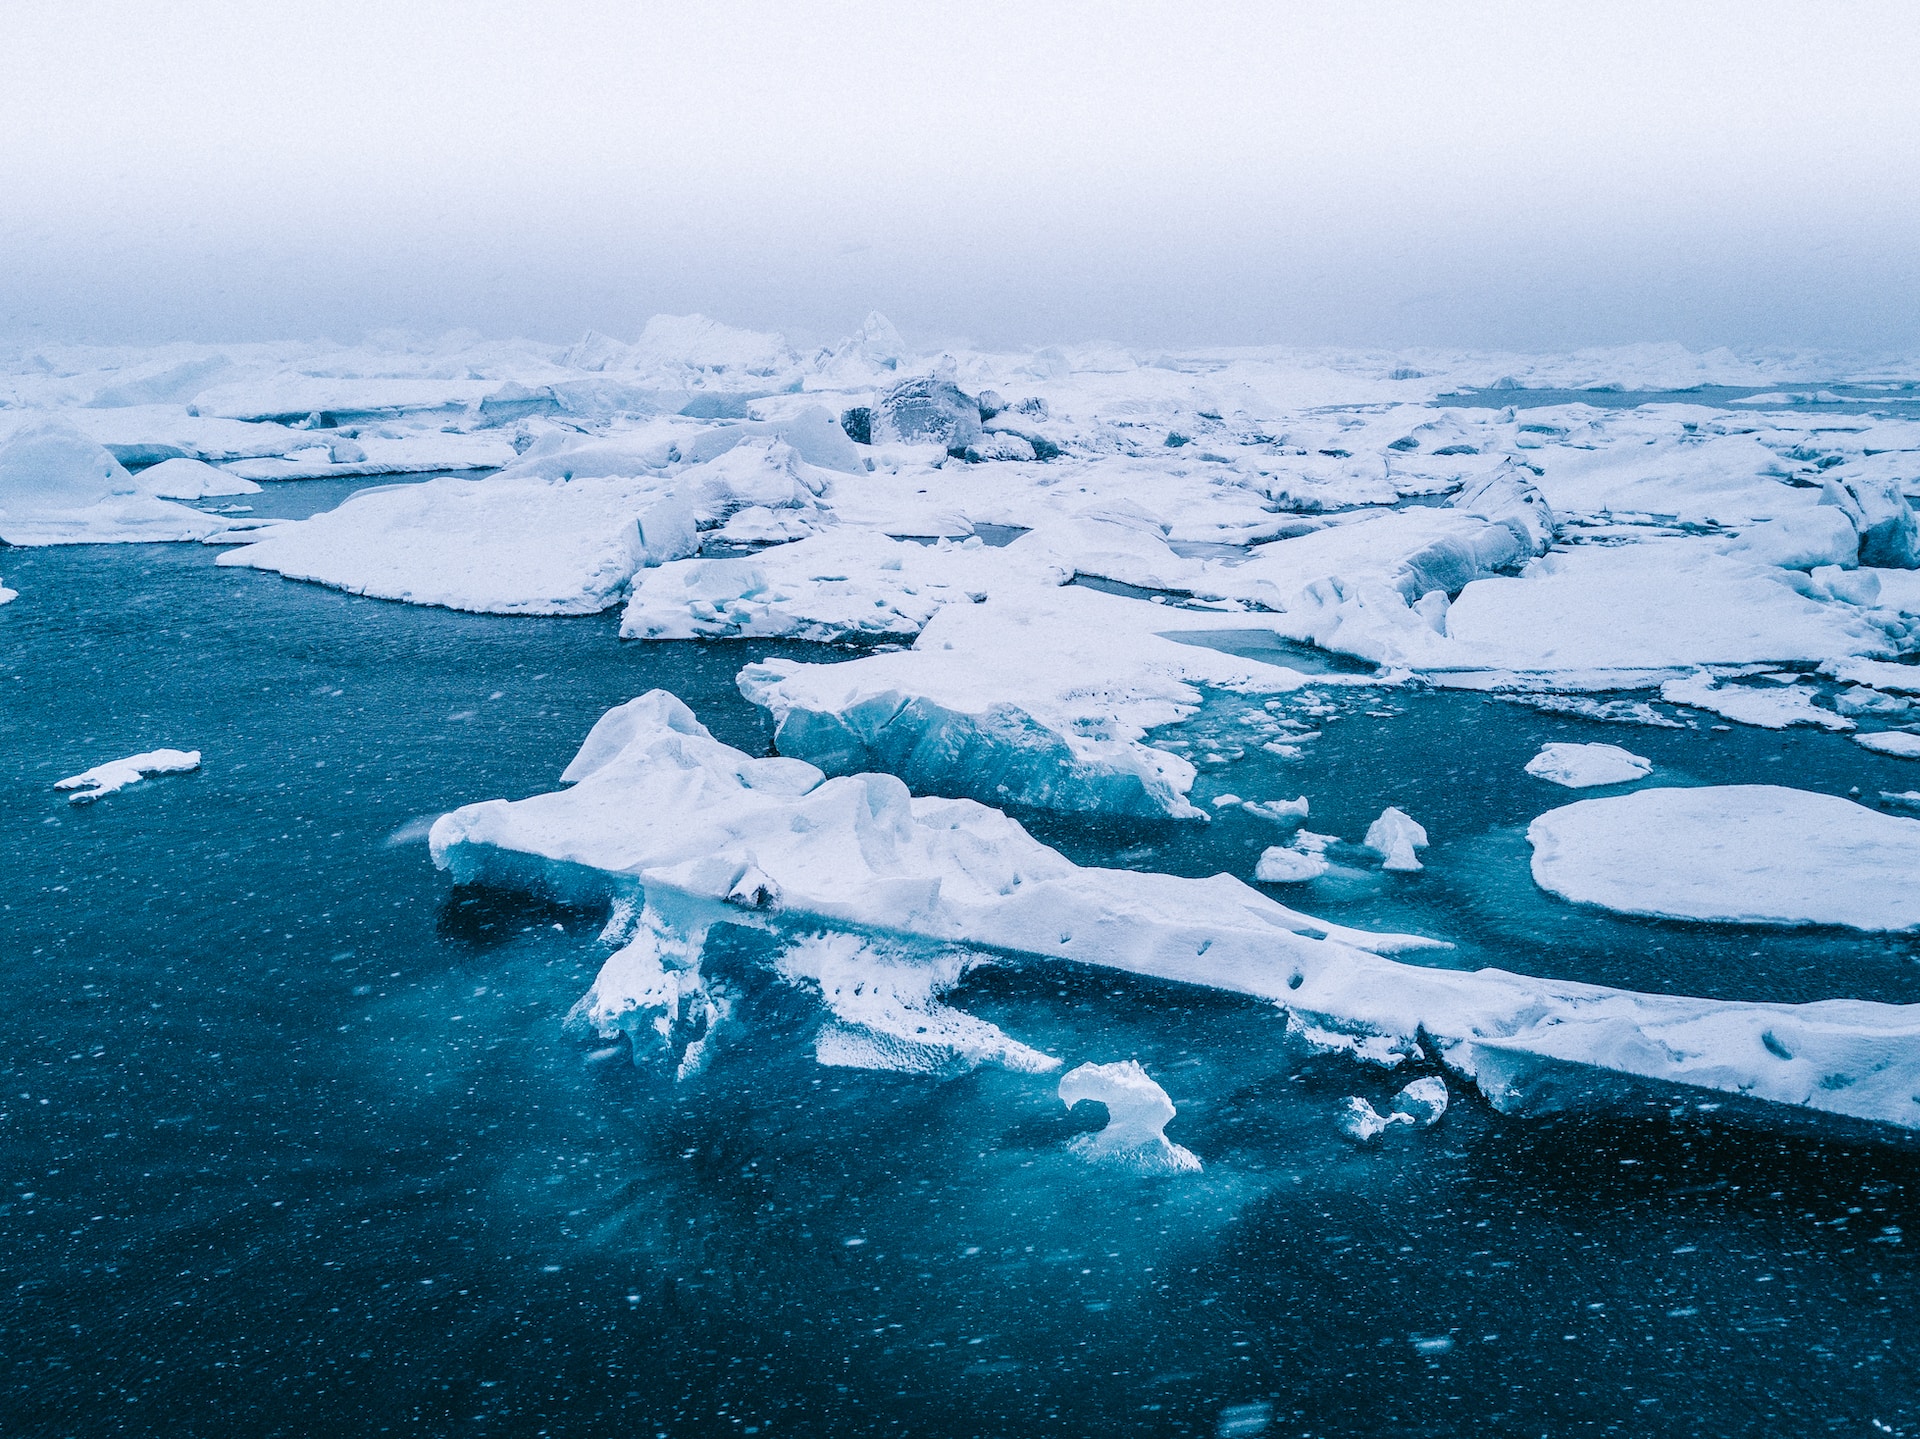 Riscaldamento globale nell’Artico: ci fa sforare gli 1,5°C 5 anni prima